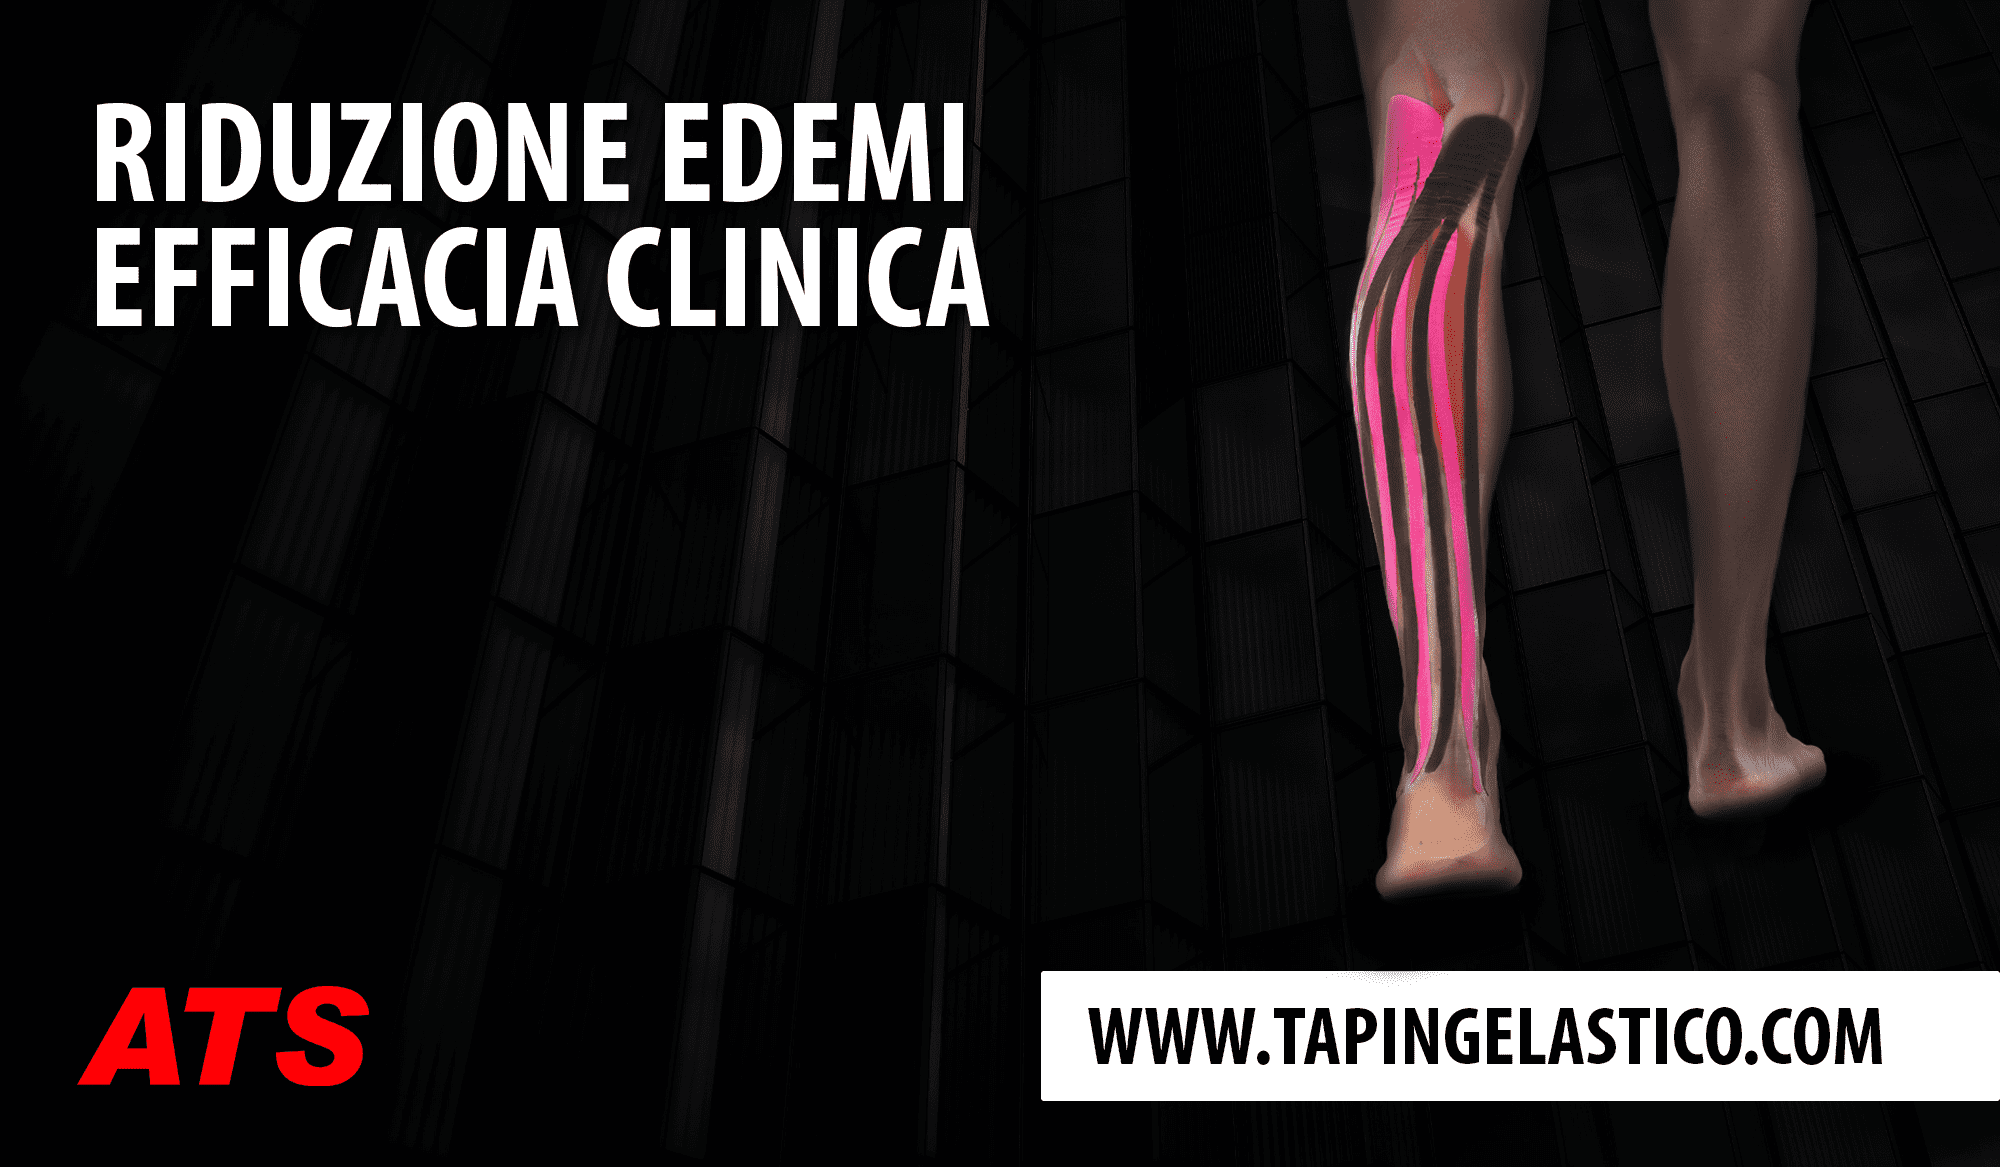 Efficacia clinica dell’utilizzo del Taping Elastico® nella riduzione degli edemi agli arti inferiori. Applicazione Linfodrenante.